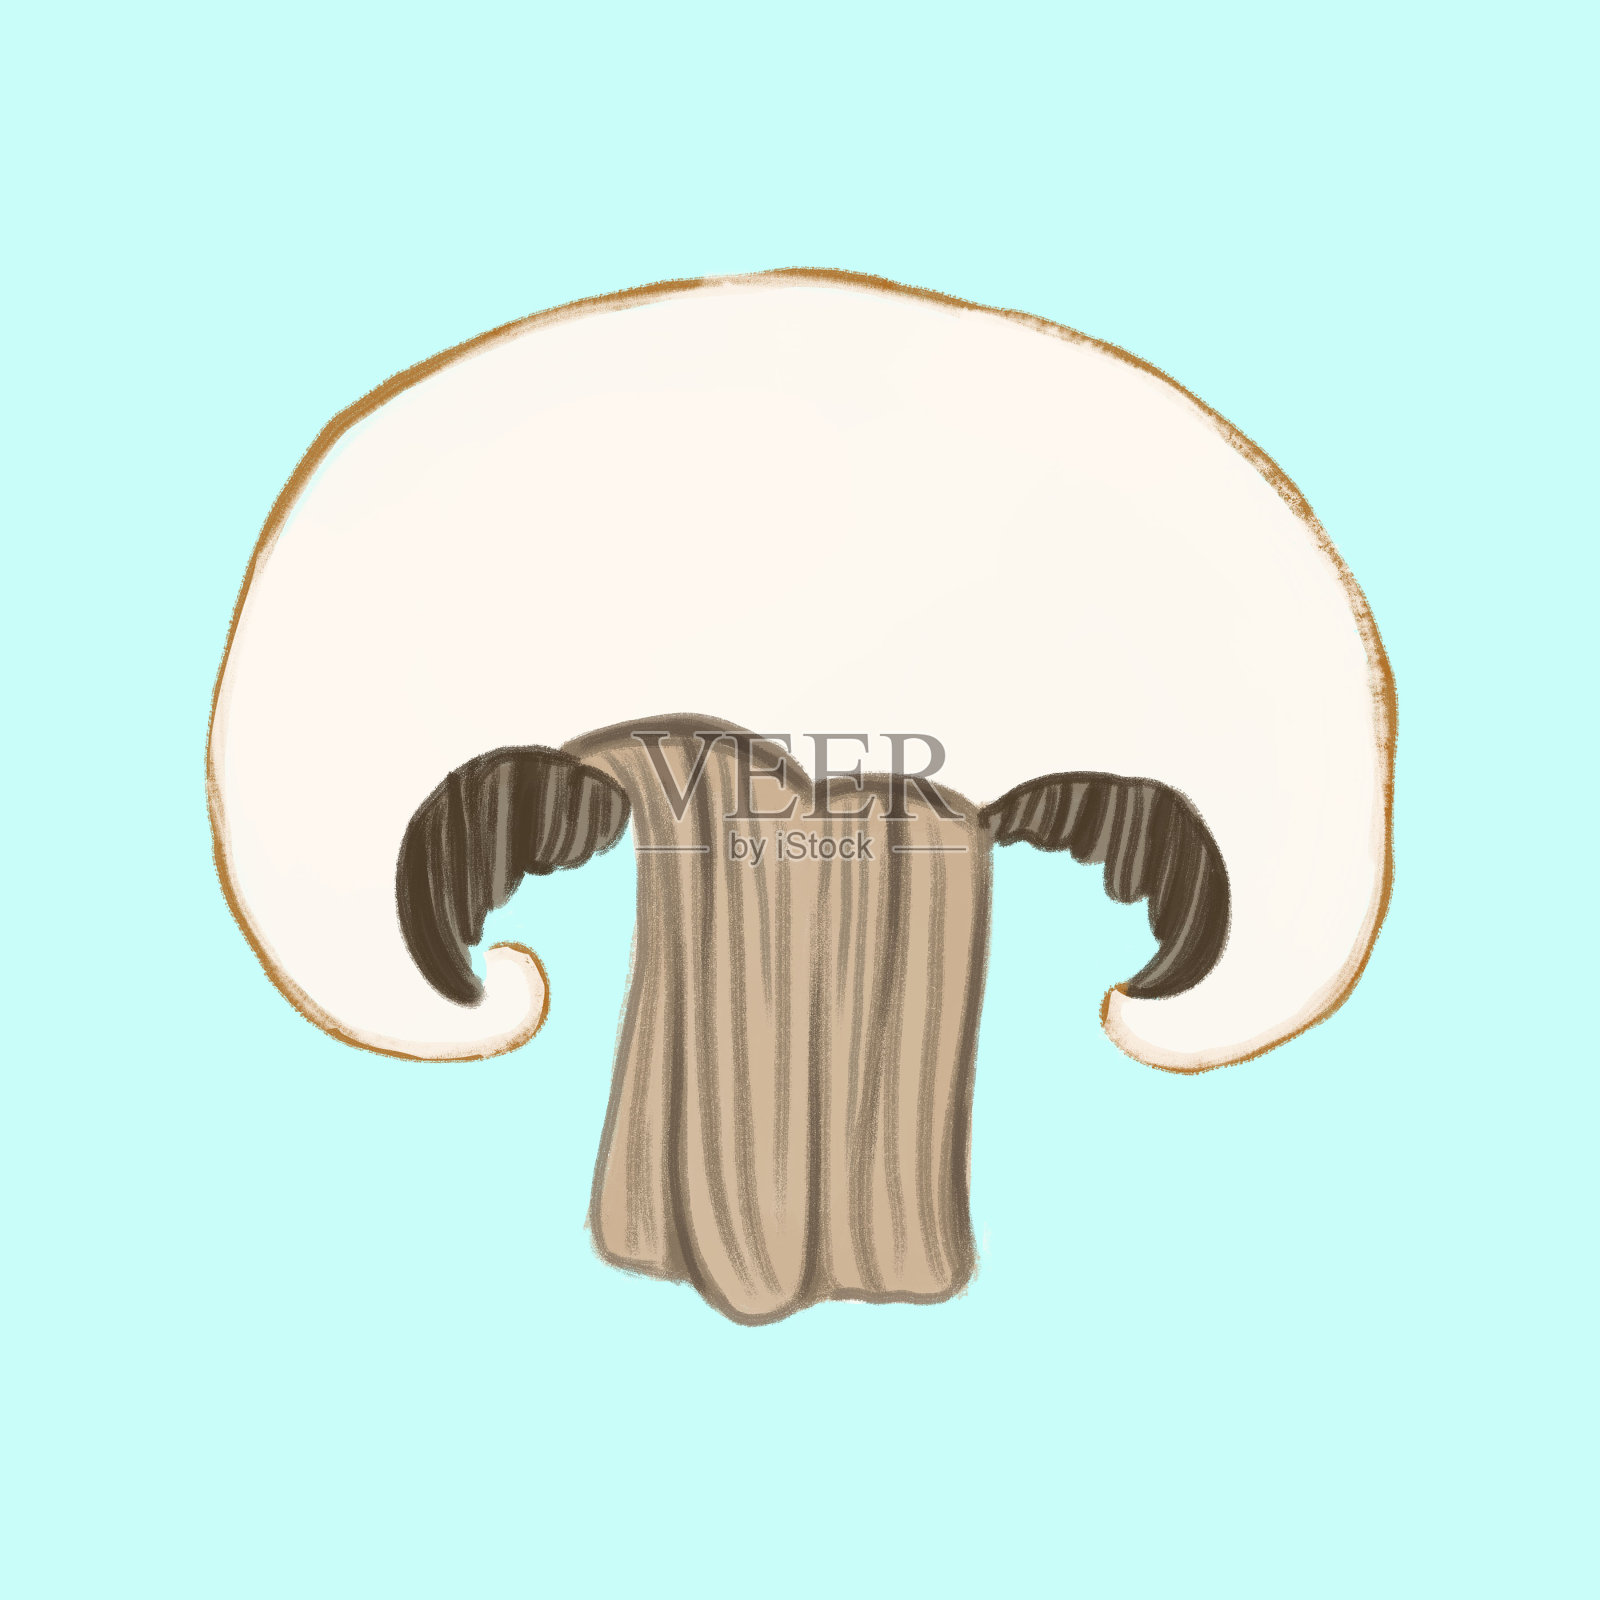 蘑菇插画图片素材